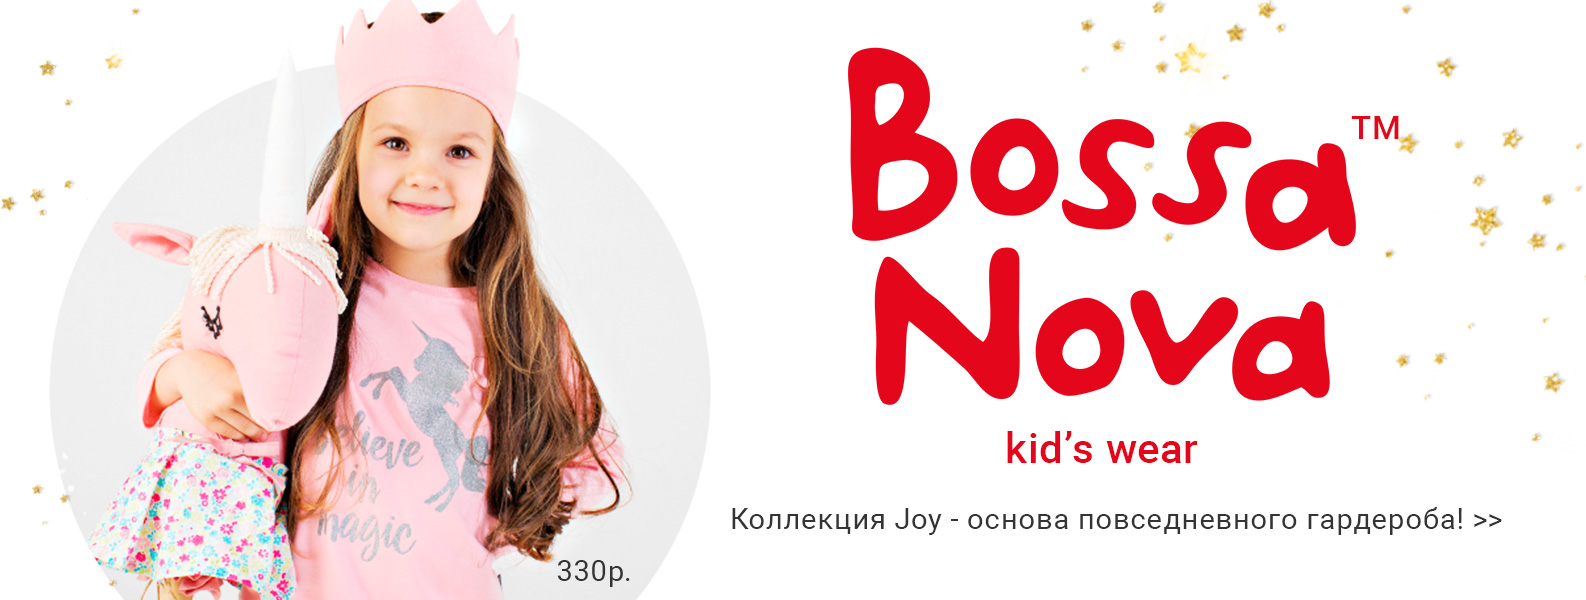 Bossa Nova детская одежда реклама. Bossa Nova детская одежда баннер. Радости магазин одежды. Картинки для интернет магазина " Беби кидс".